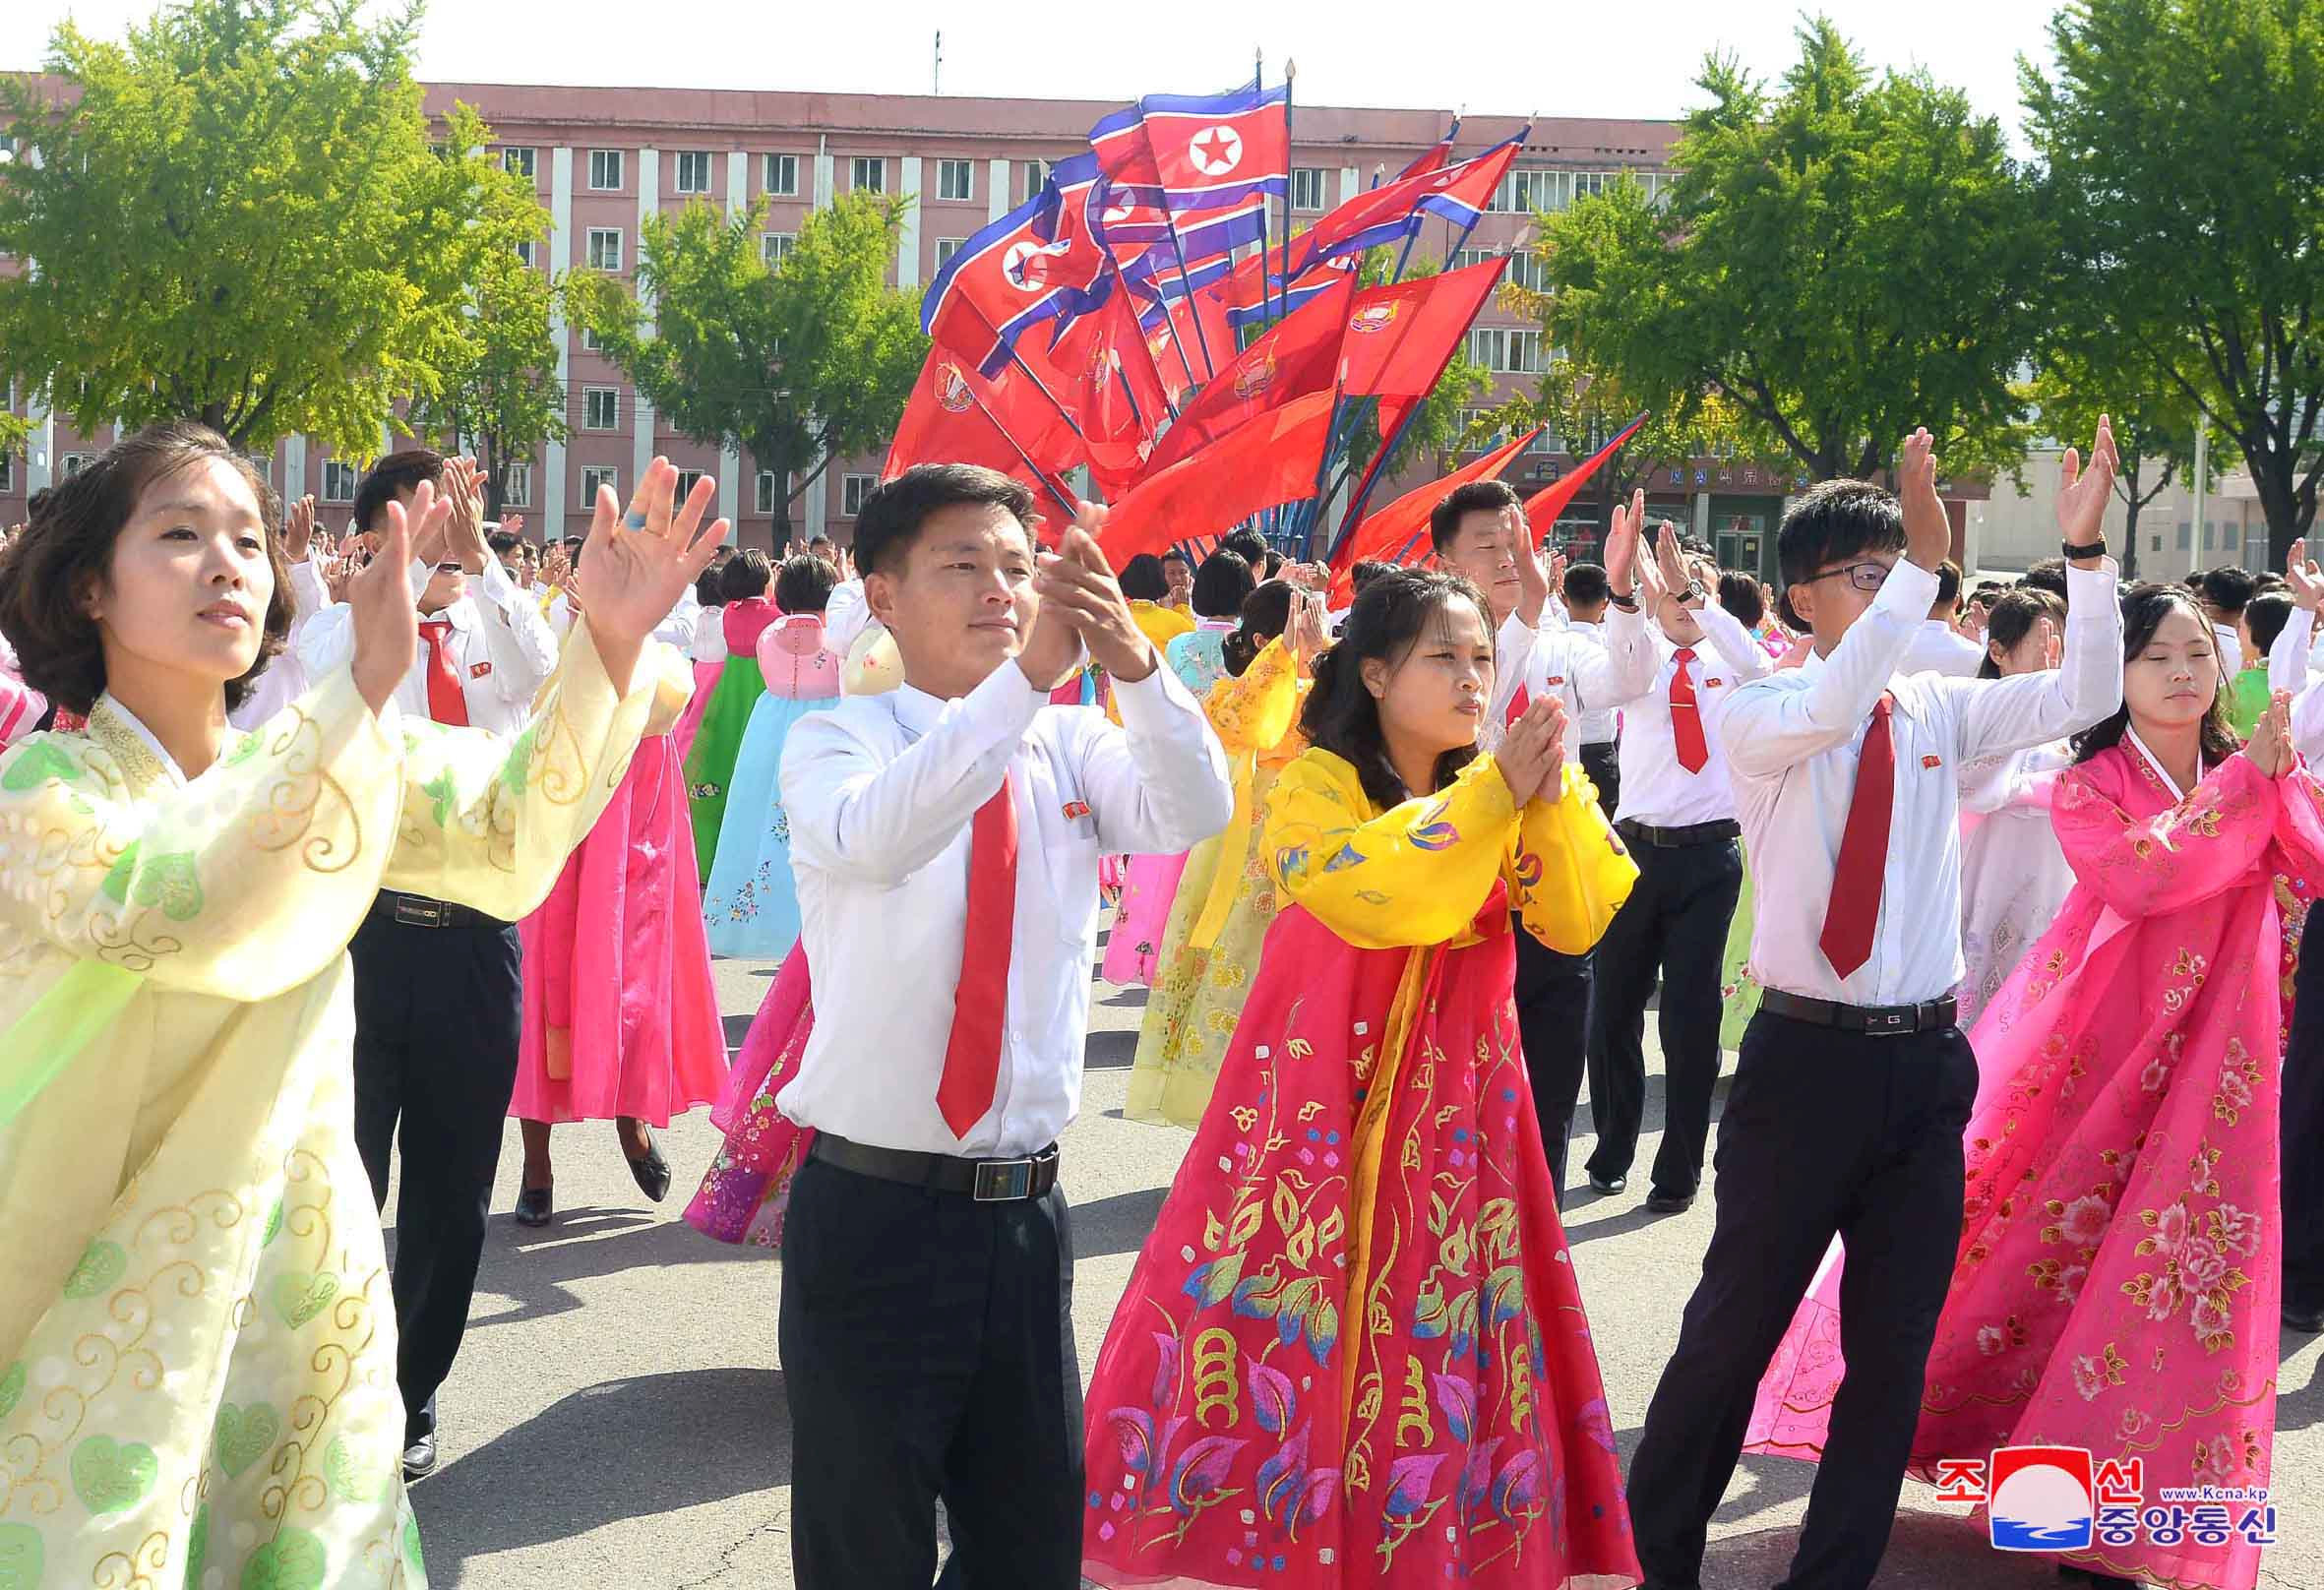 مواطنو كوريا الشمالية يحتفلون فى الشوارع